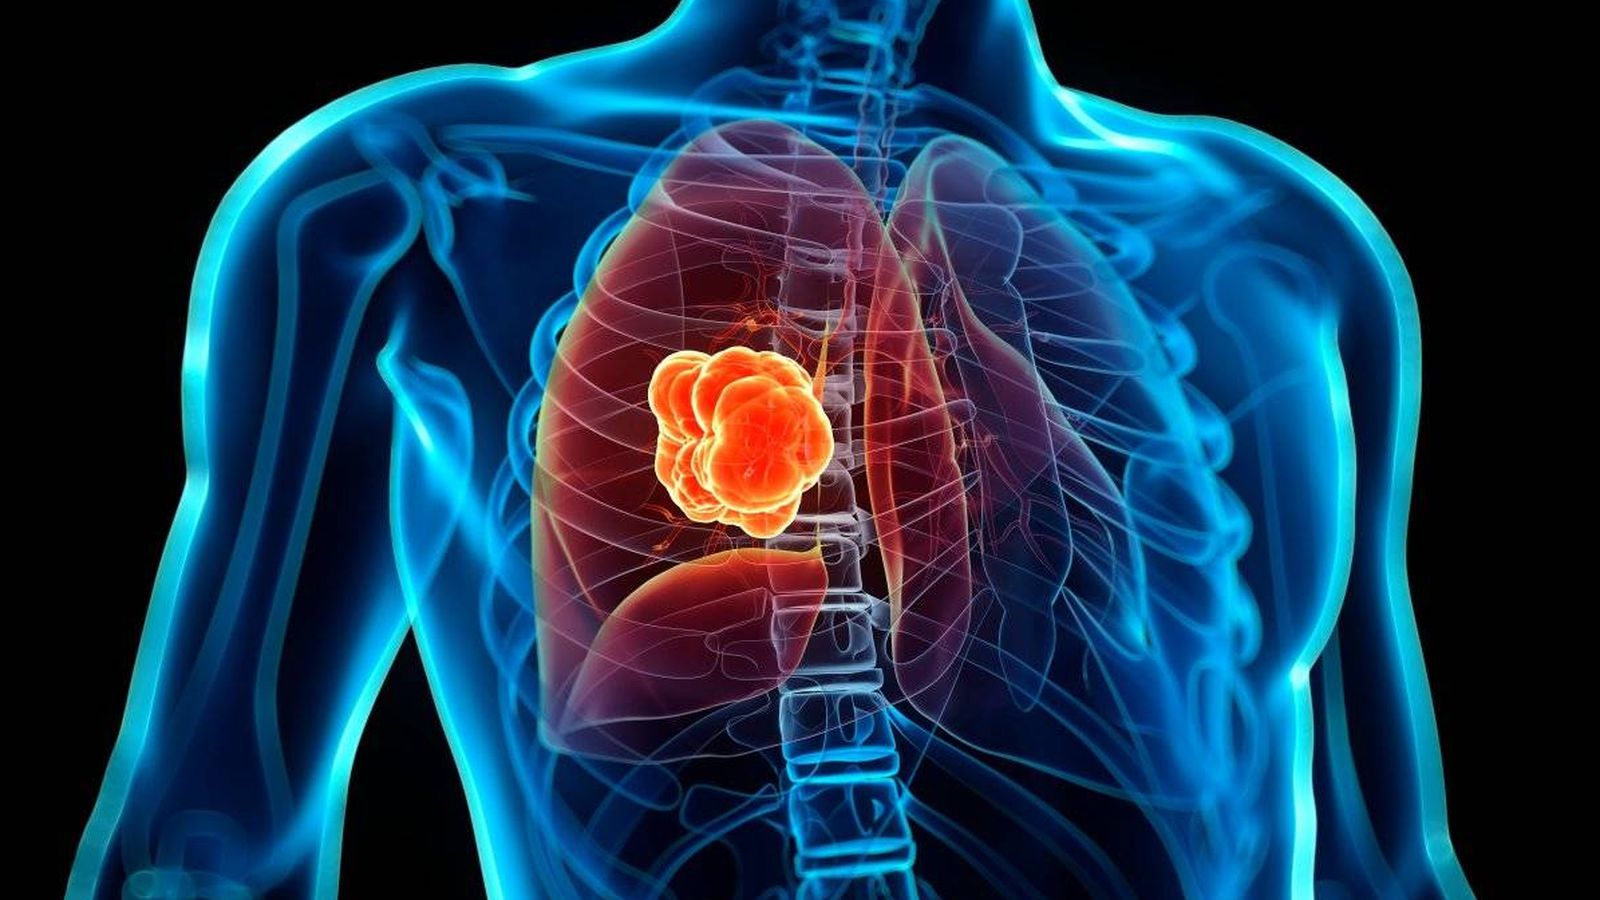 Lumakras, pastila care tratează cancerul pulmonar, a primit aprobarea FDA